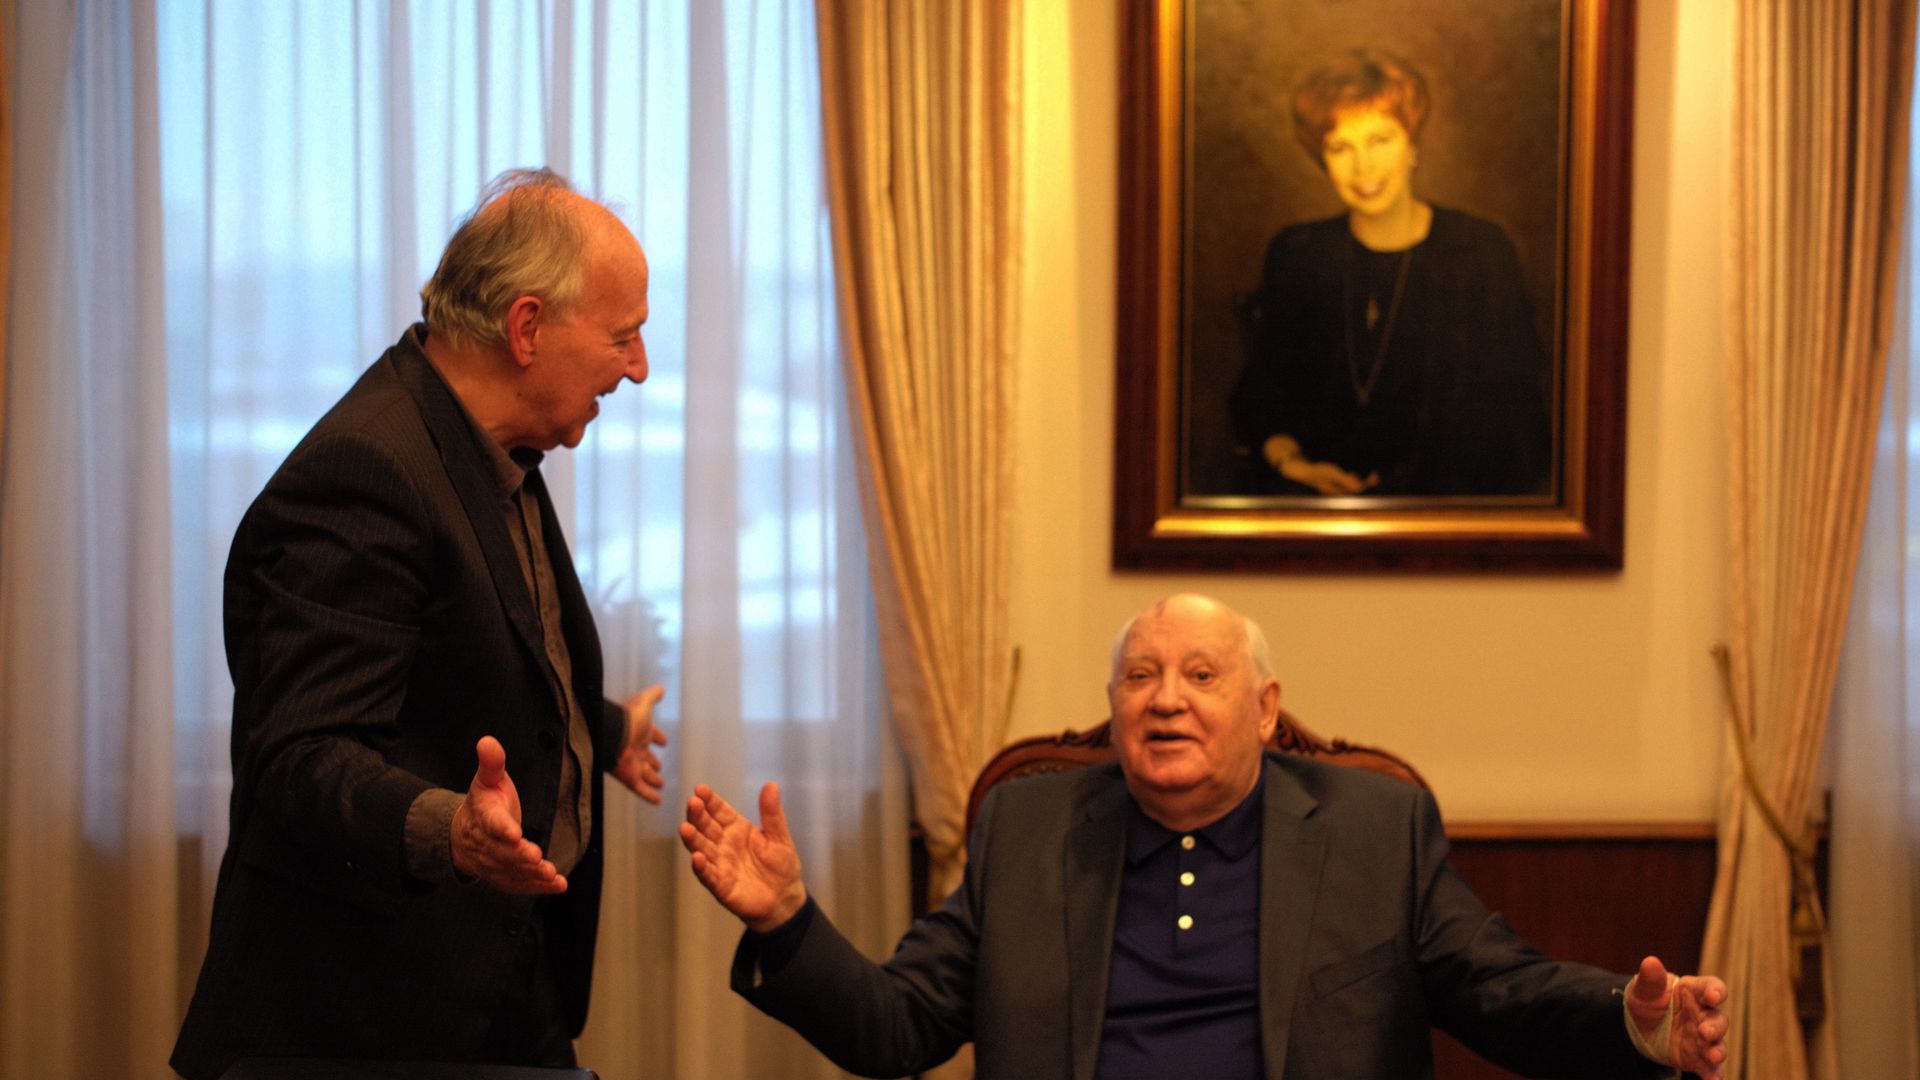 Meeting Gorbachev Backdrop